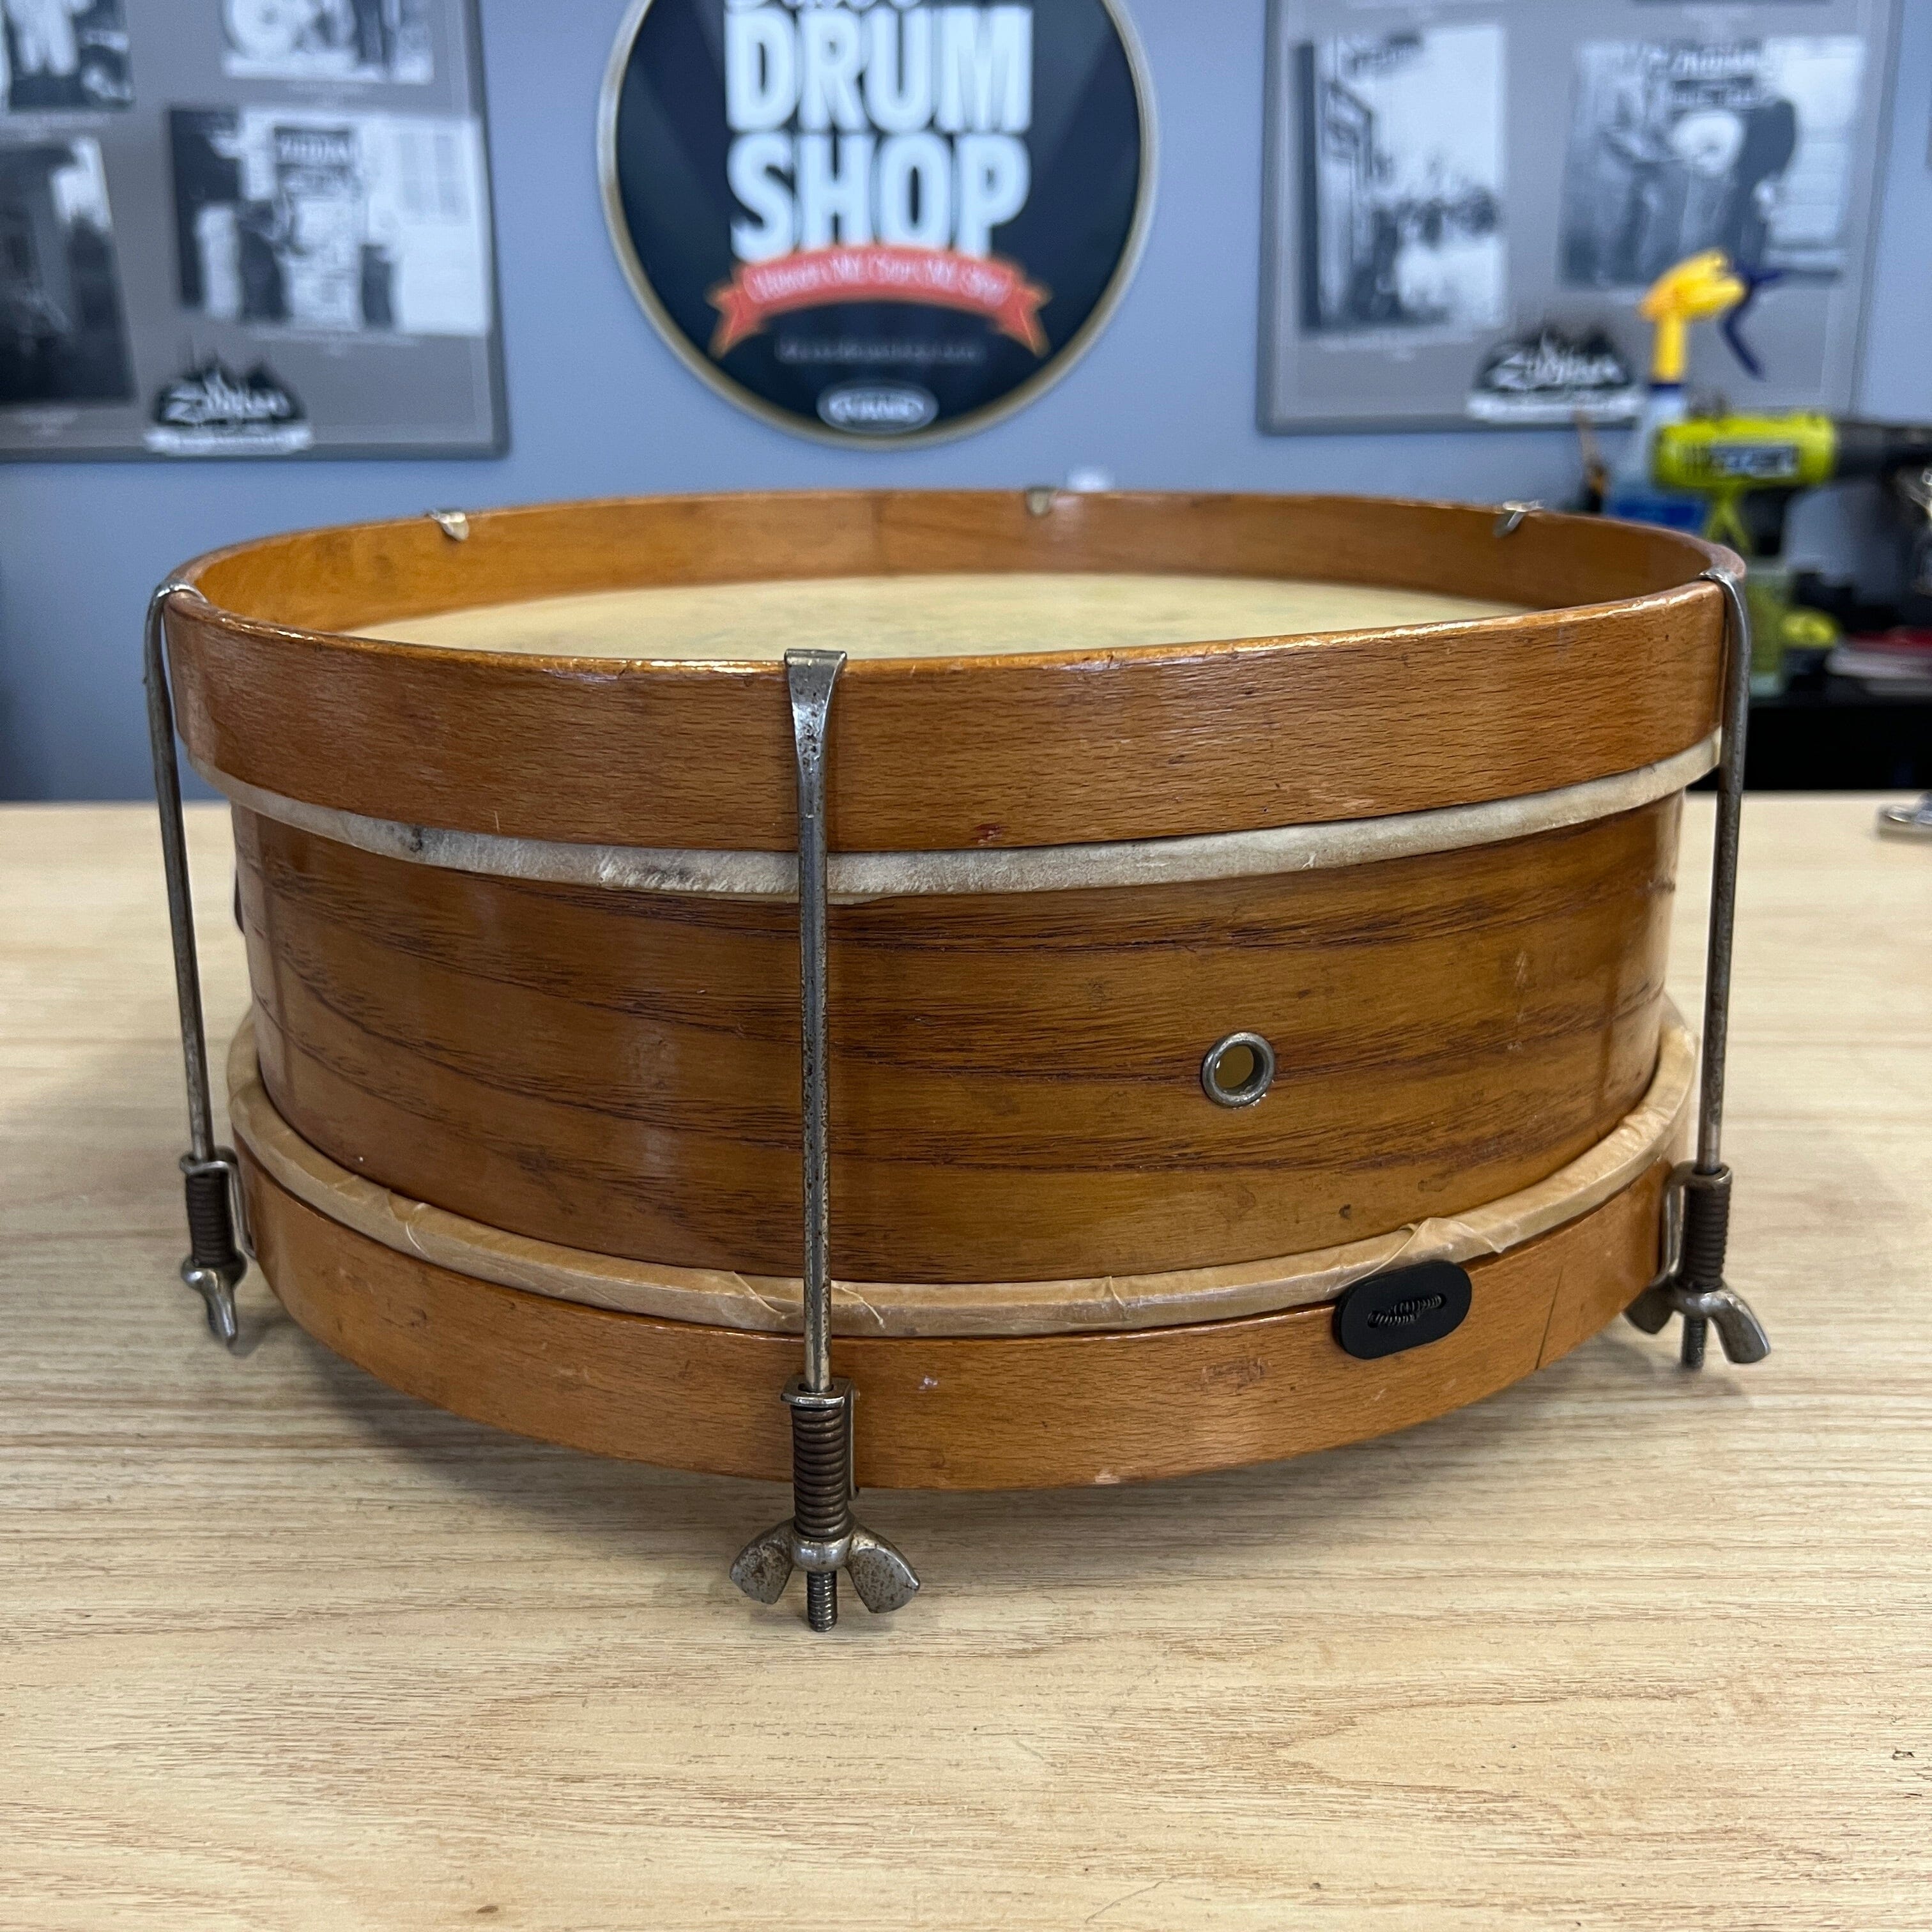 Single Tension Vintage "Toy" Snare Drum drum kit Vintage 